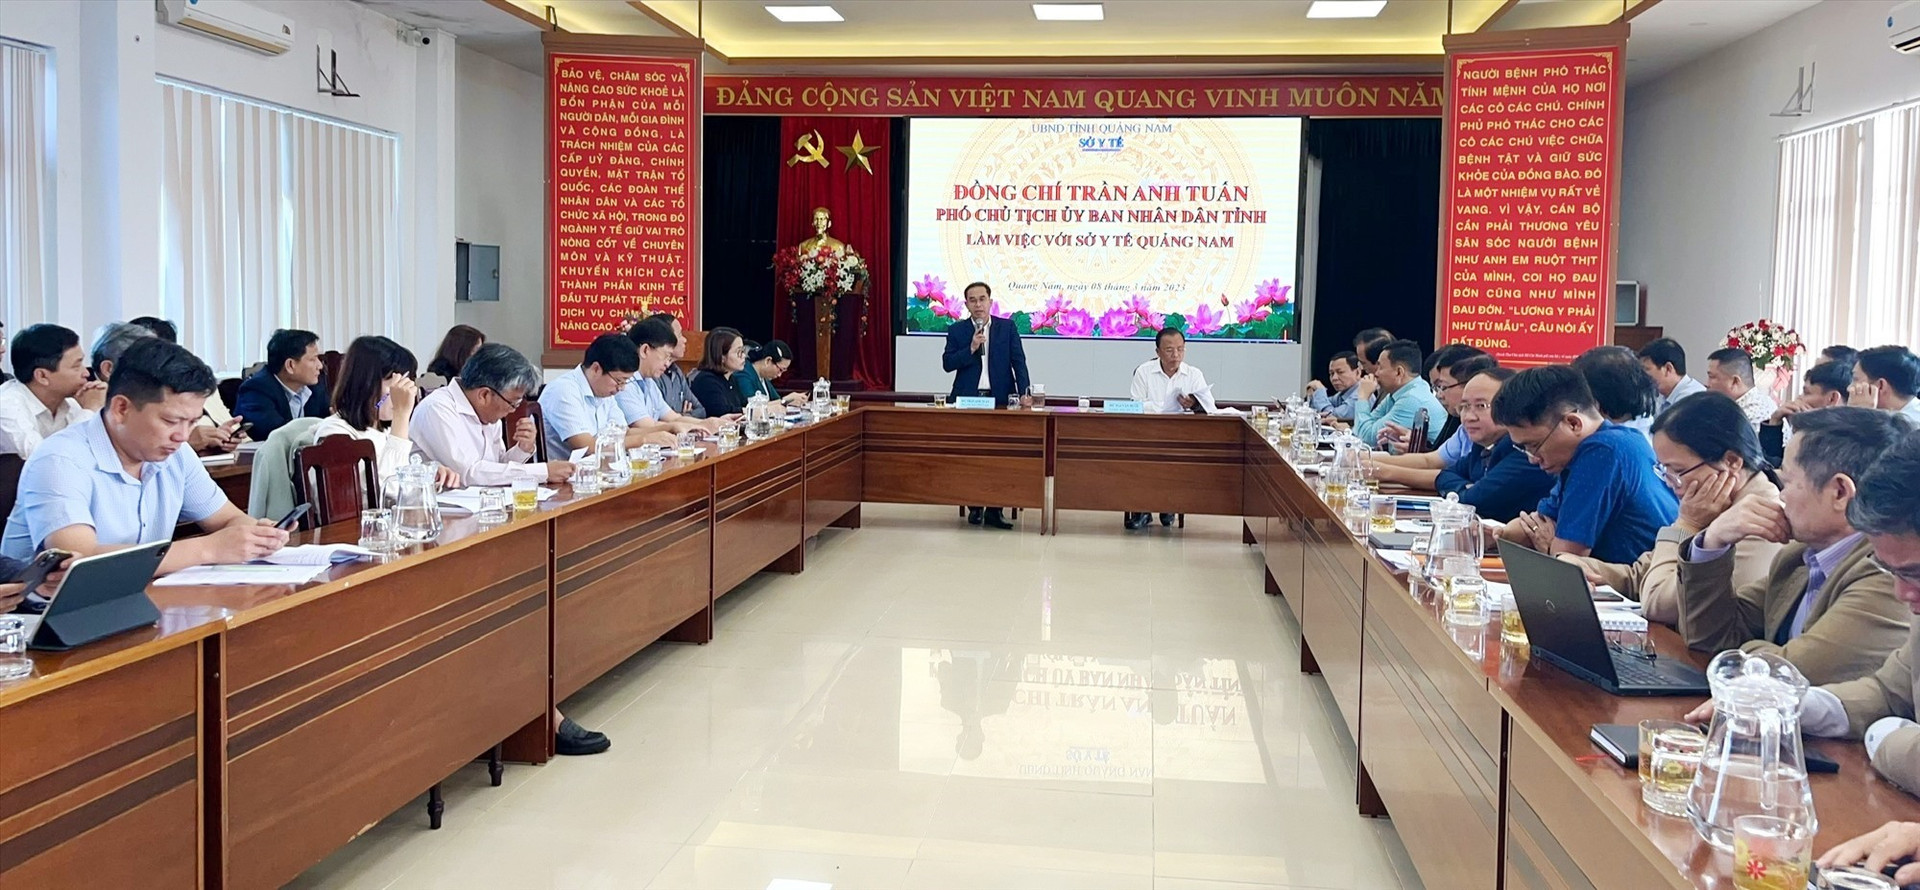 Phó Chủ tịch UBND tỉnh Trần Anh Tuấn chủ trì cuộc làm việc với Sở Y tế sáng ngày8/3. Ảnh: X.H